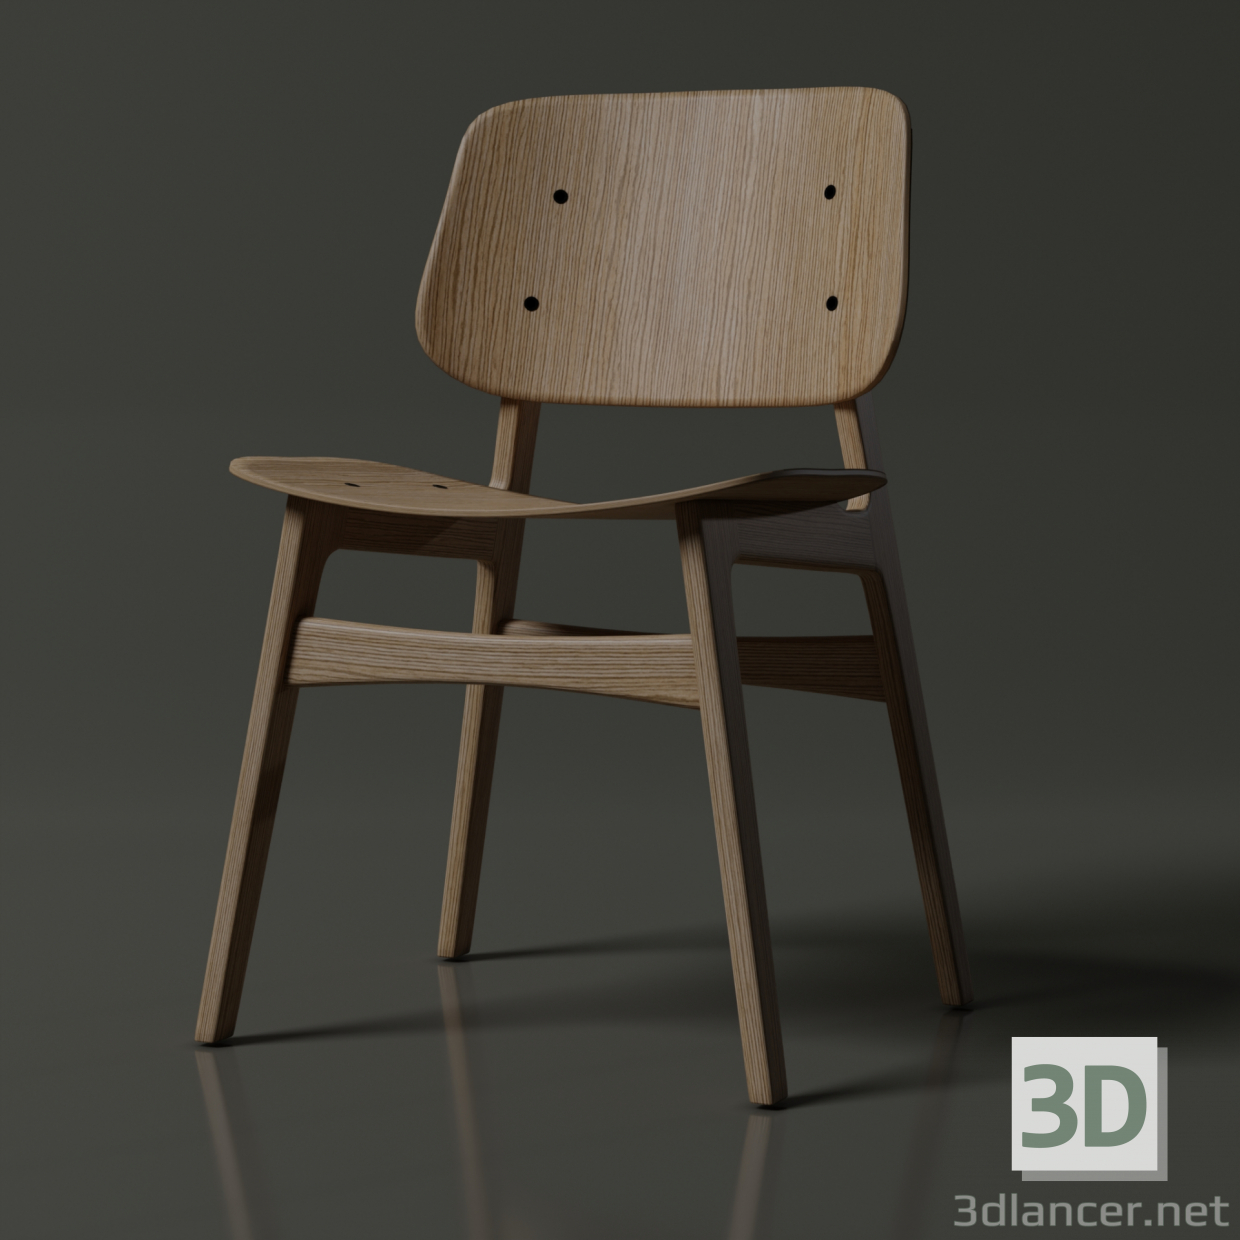 Holzstuhl 3D-Modell kaufen - Rendern